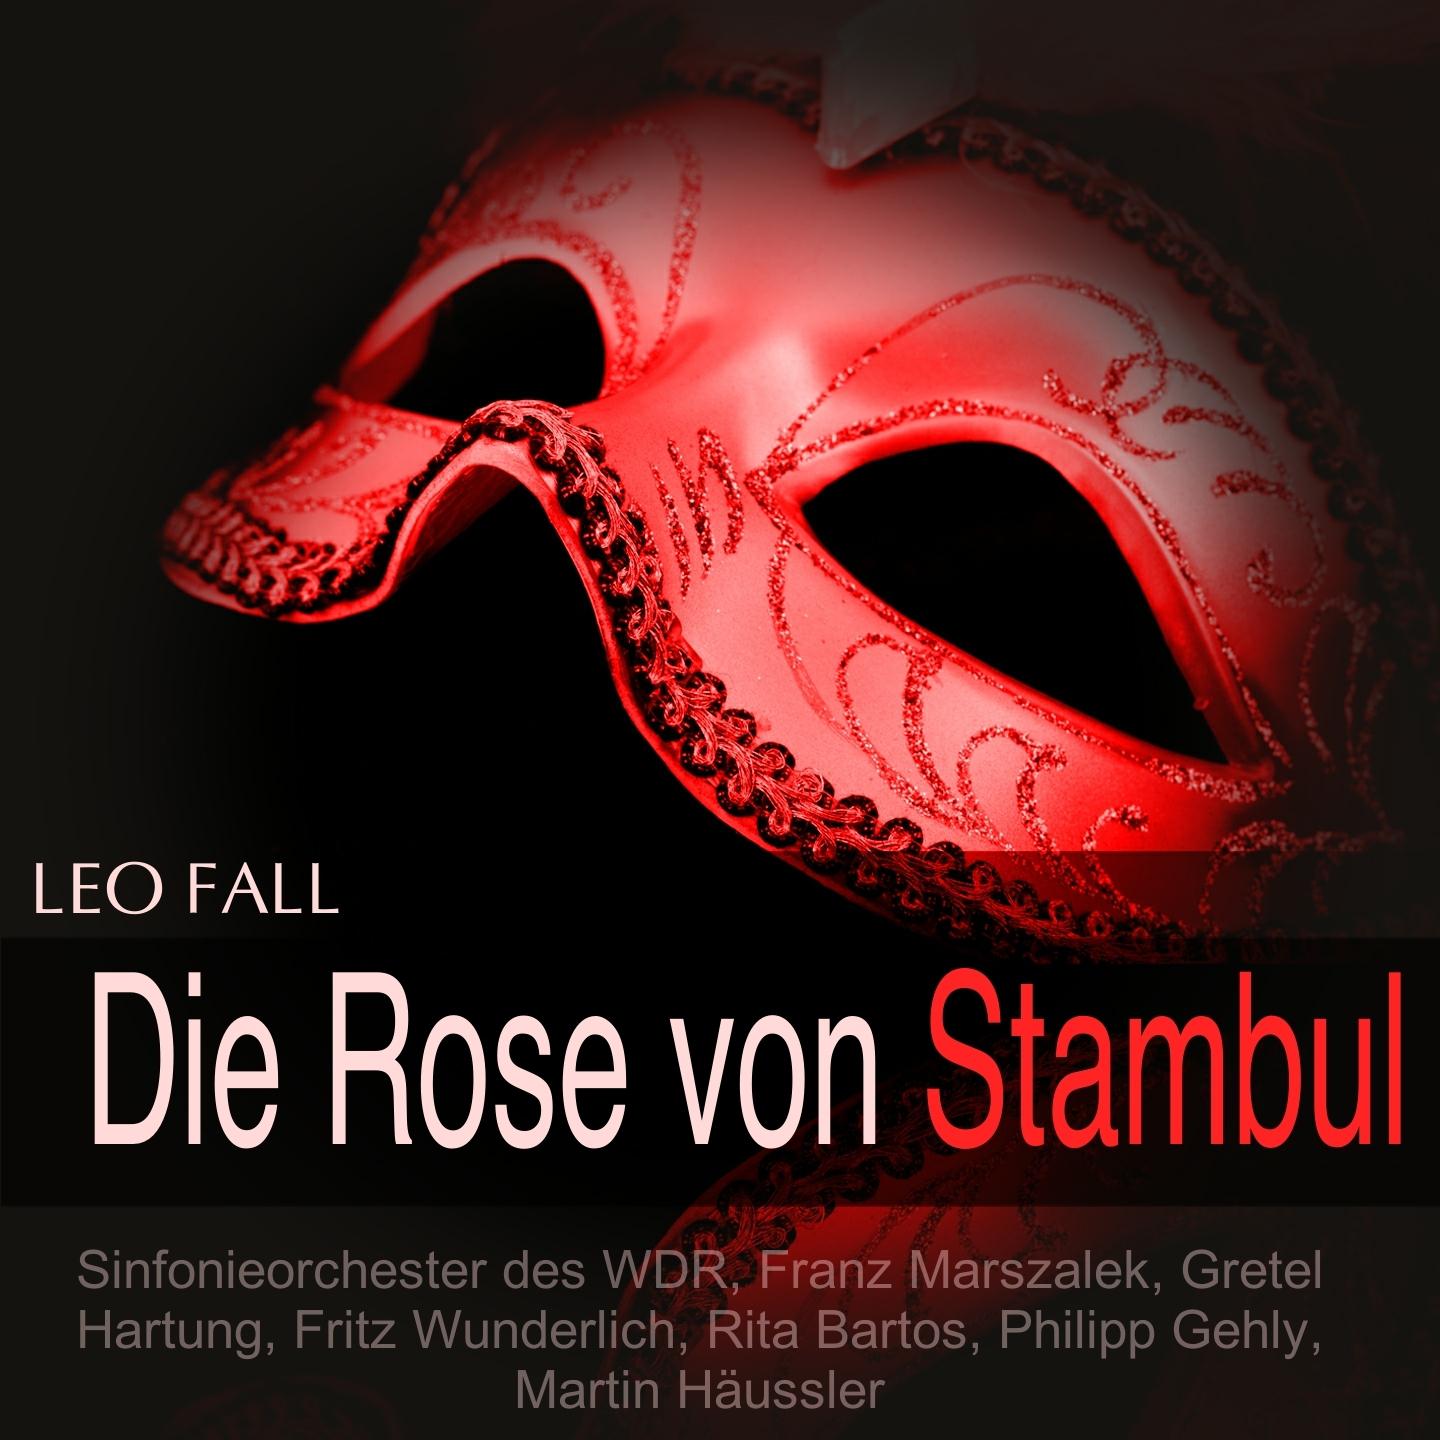 Die Rose von Stambul, Act I: Dialog 1 (Kondja)